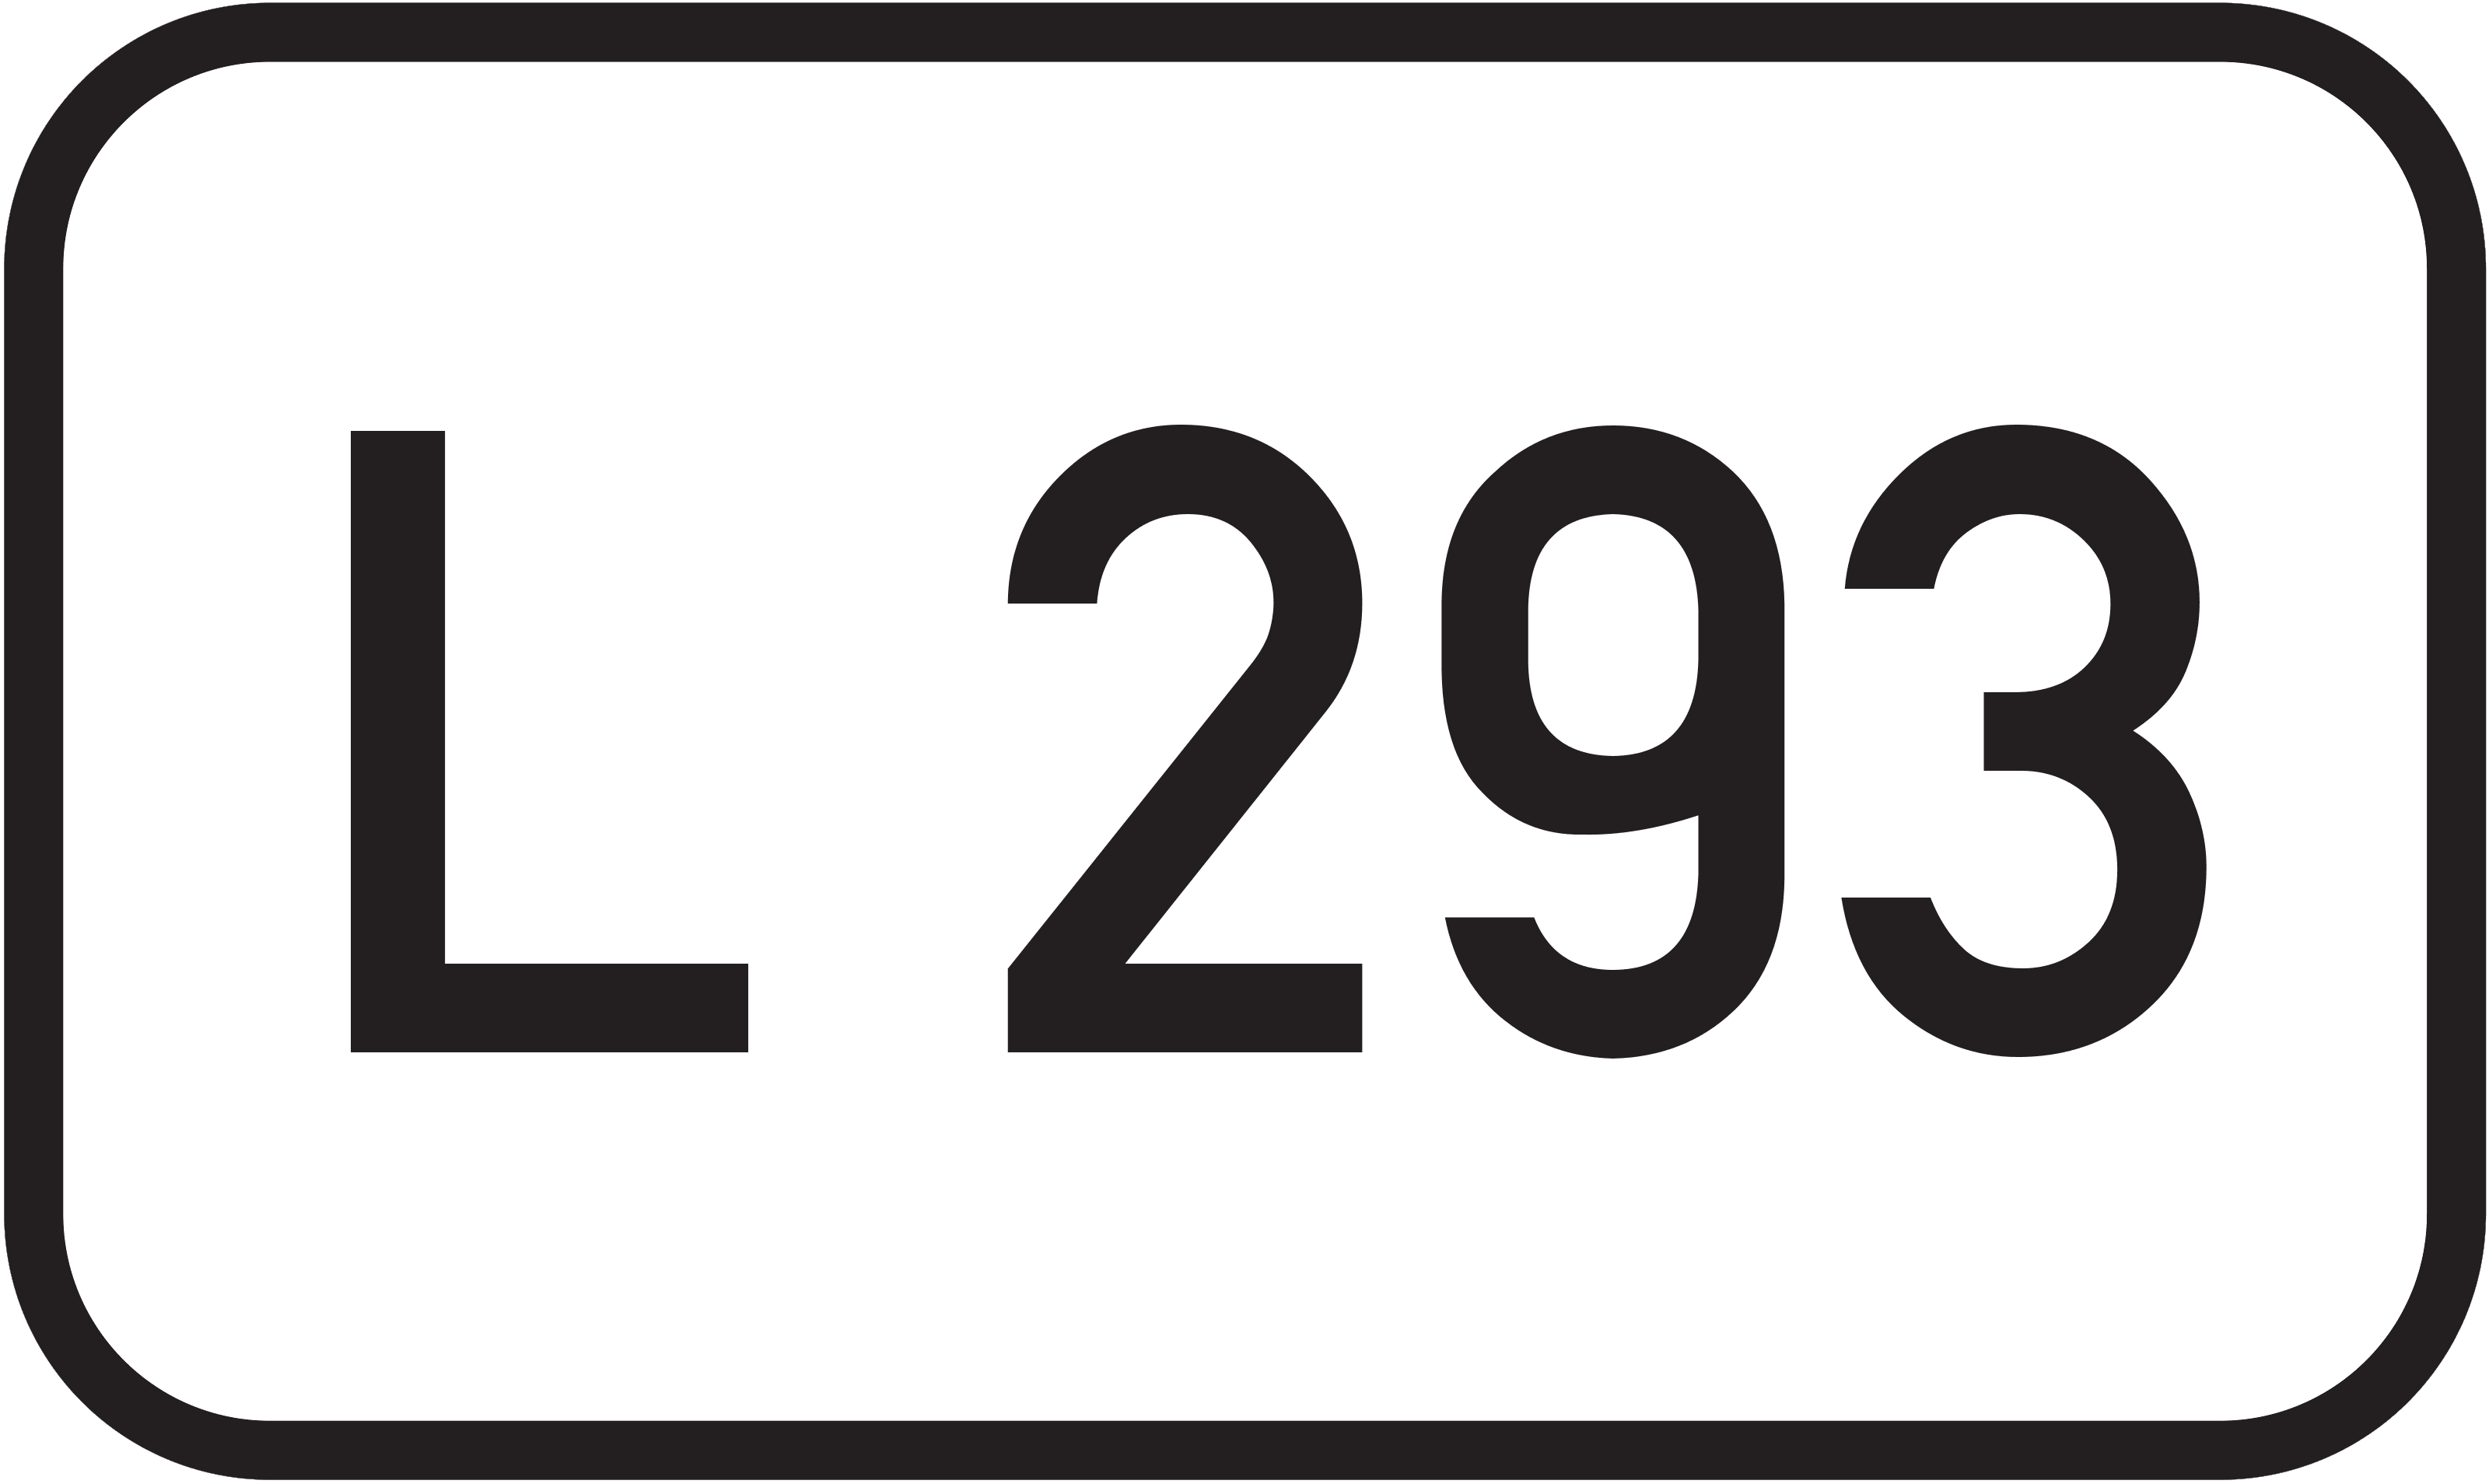 Landesstraße L 293